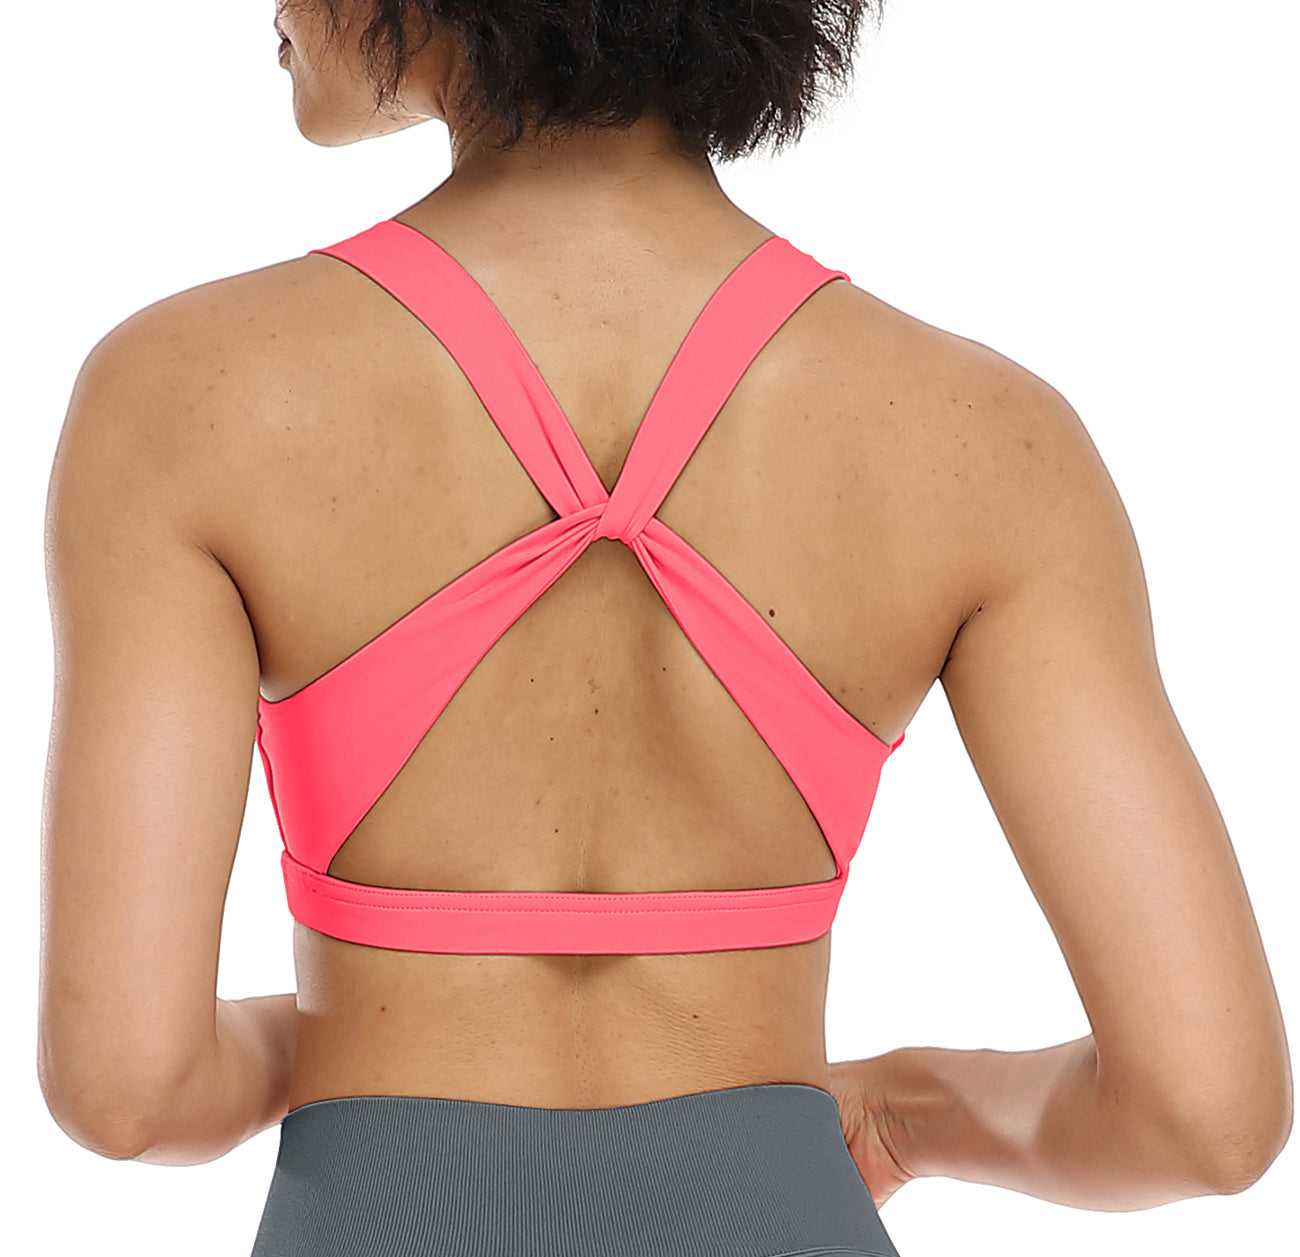 Women's Sports Bra,Back Portable Pocket,Comfy Yoga Workout Bra